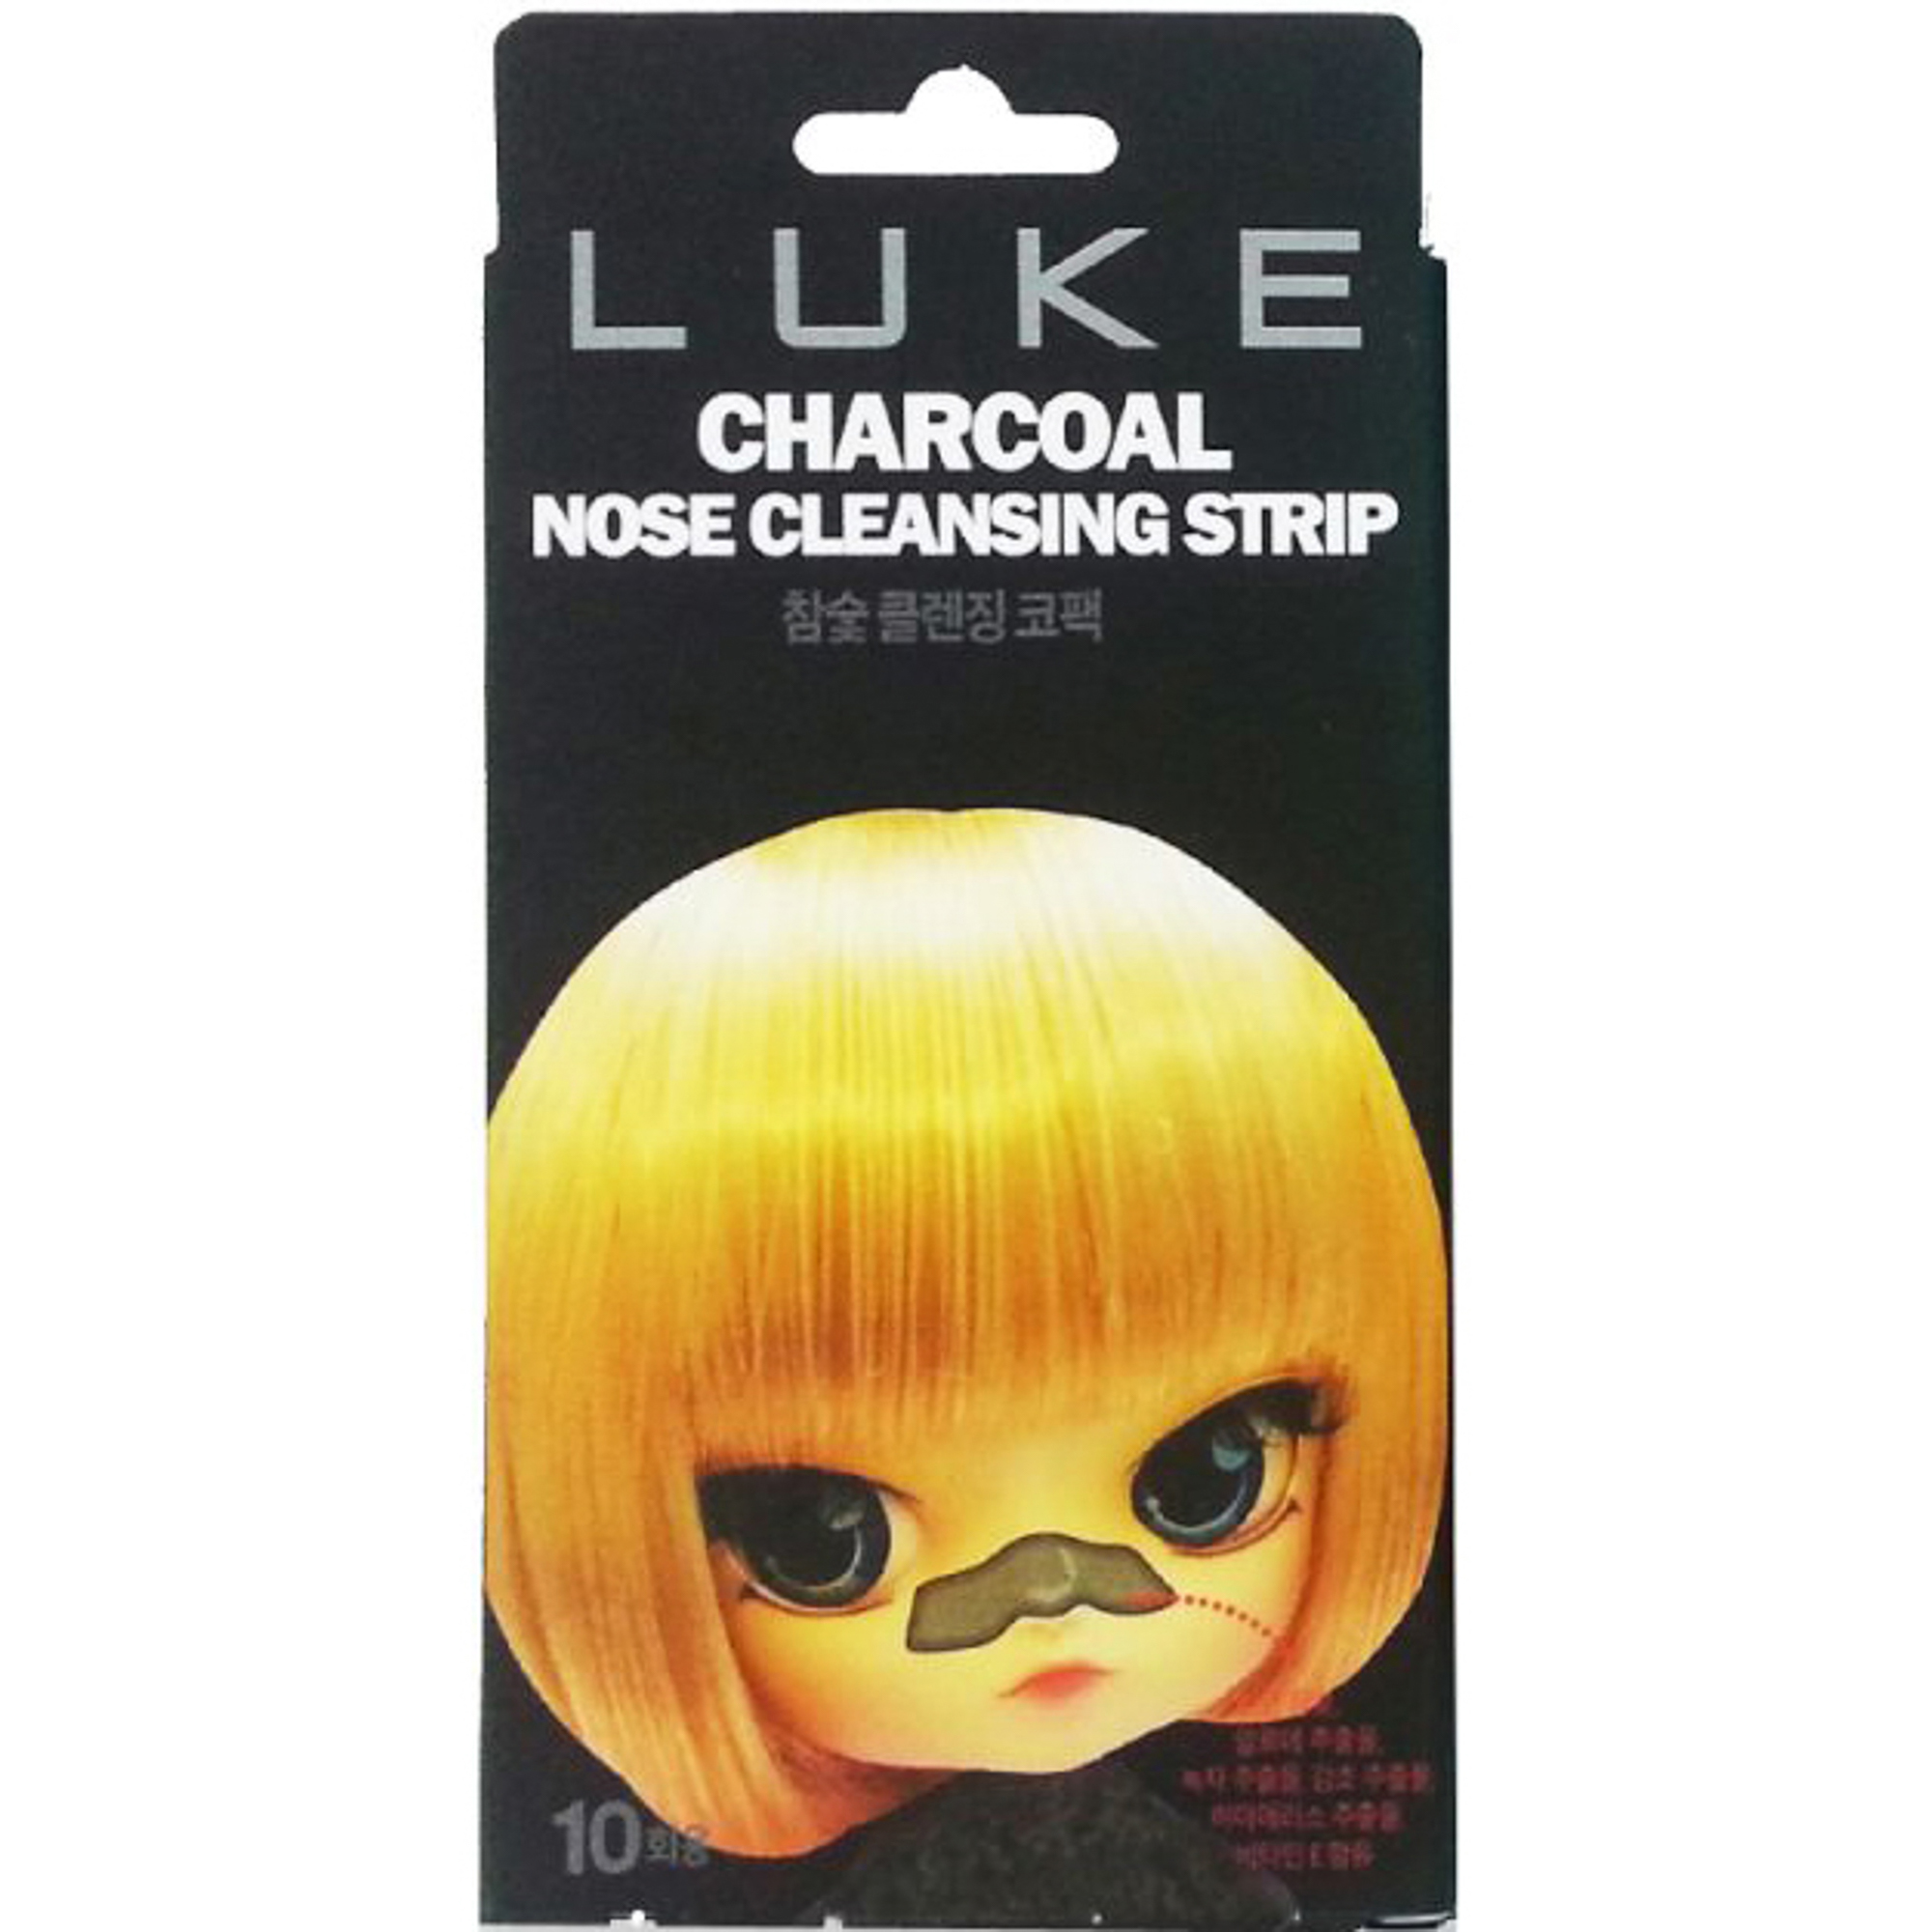 Очищающие полоски Luke Charcoal Nose Cleansing Strip 10 шт полоски для квиллинга 100 полосок плотность 120 гр